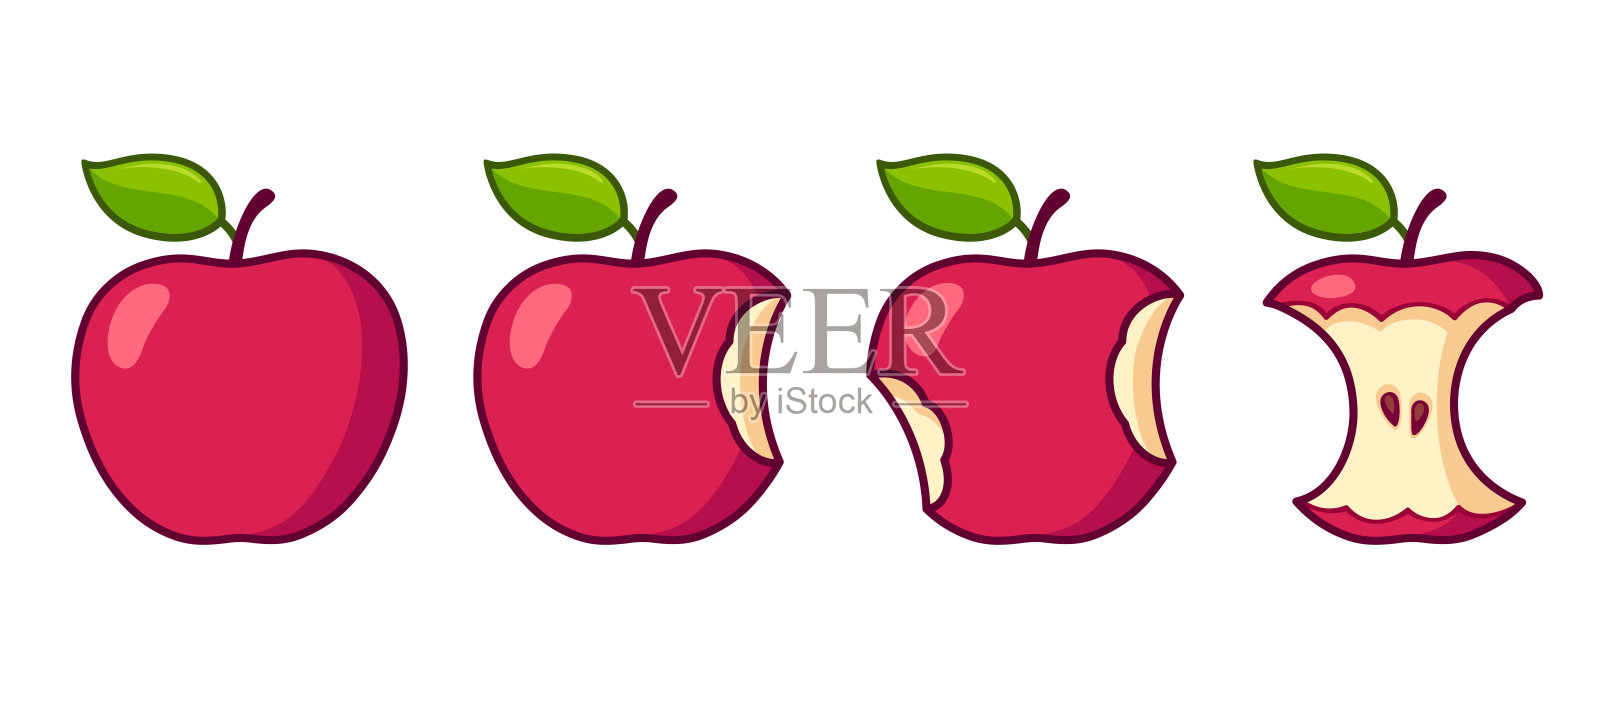 卡通苹果吃具设计元素图片